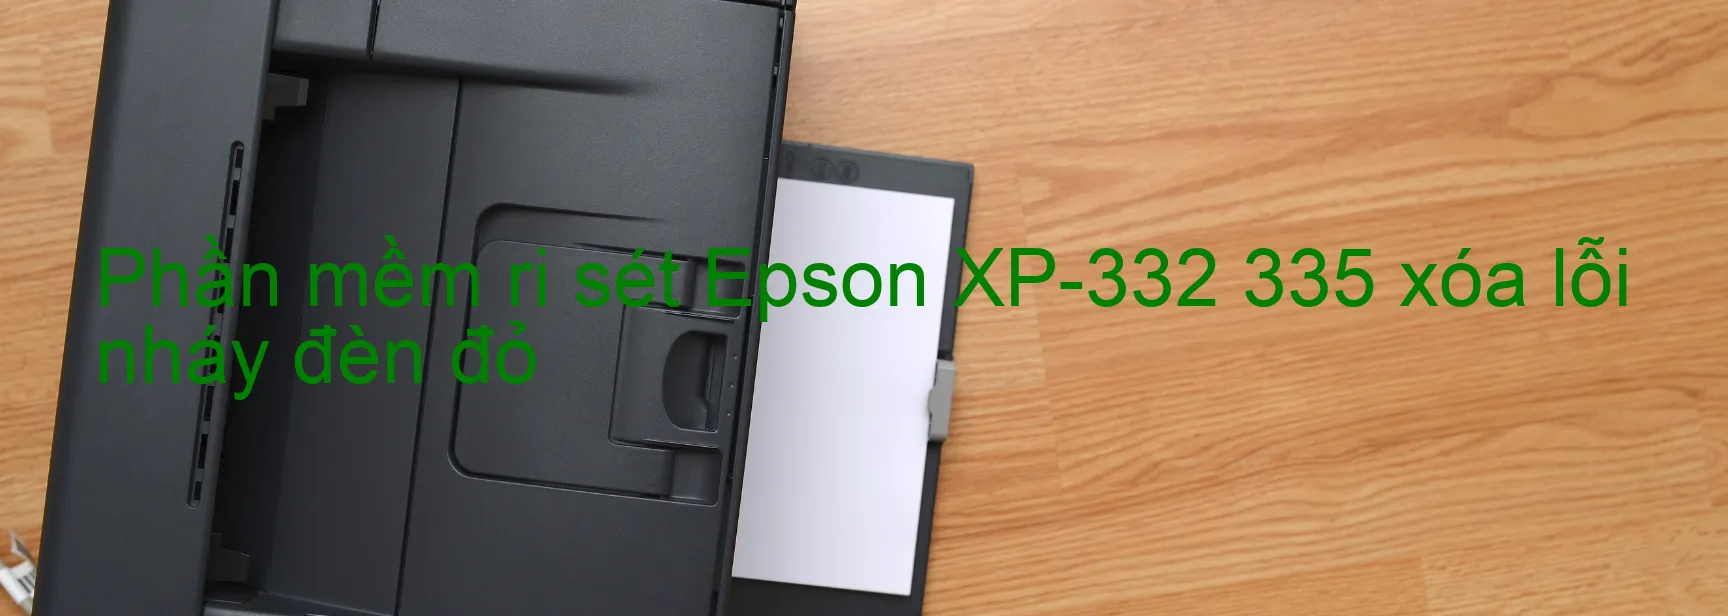 Phần mềm reset Epson XP-332 335 xóa lỗi nháy đèn đỏ